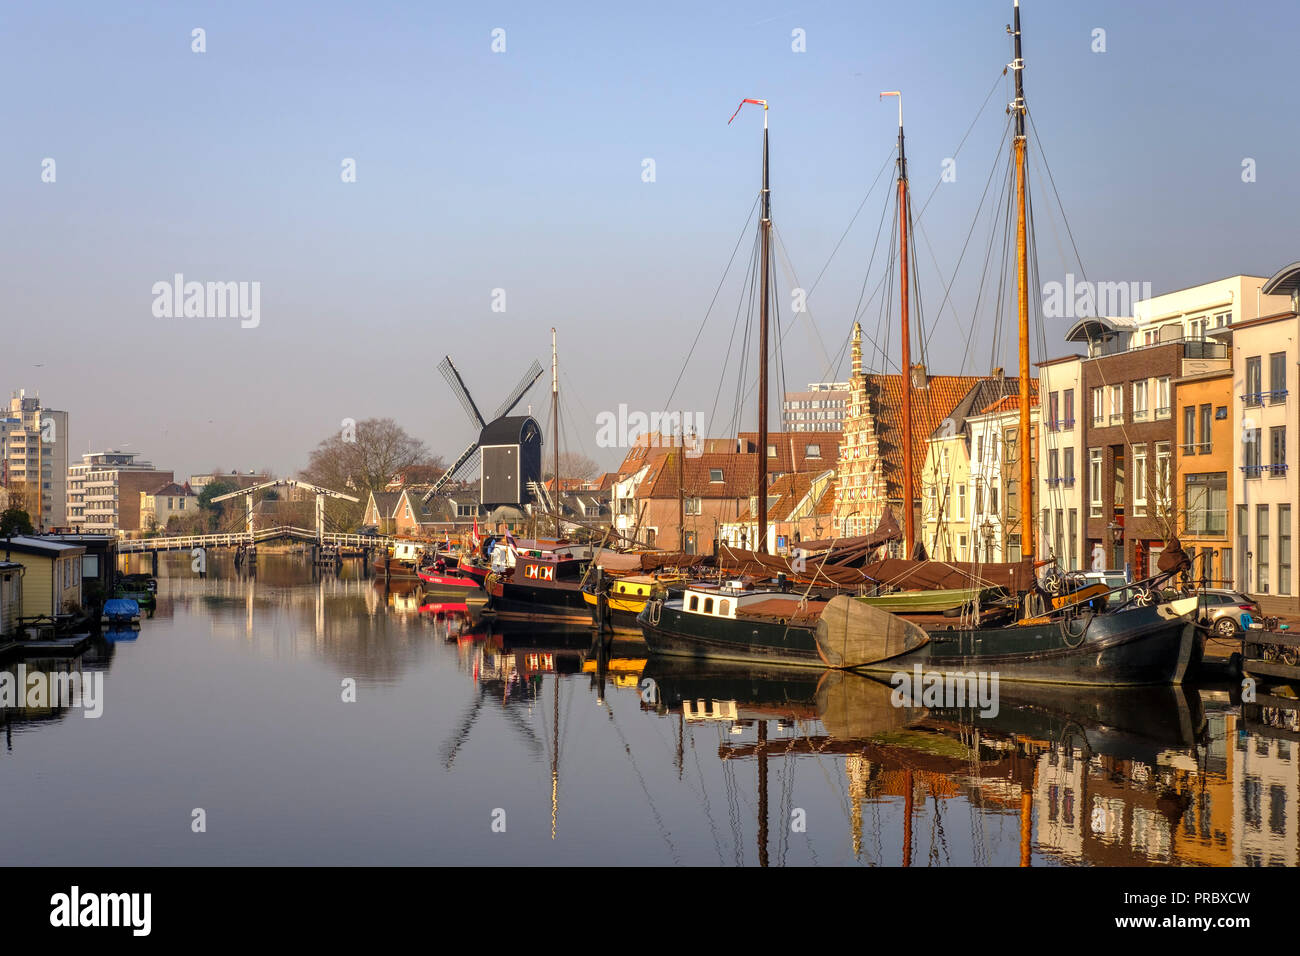 Niederlande, Leiden - Blick auf die Altstadt mit der Molen De Valk - Windmühle mit einem Wasserrad und 1900s-style Wohnräume. Leiden kommunalen Wind Stockfoto